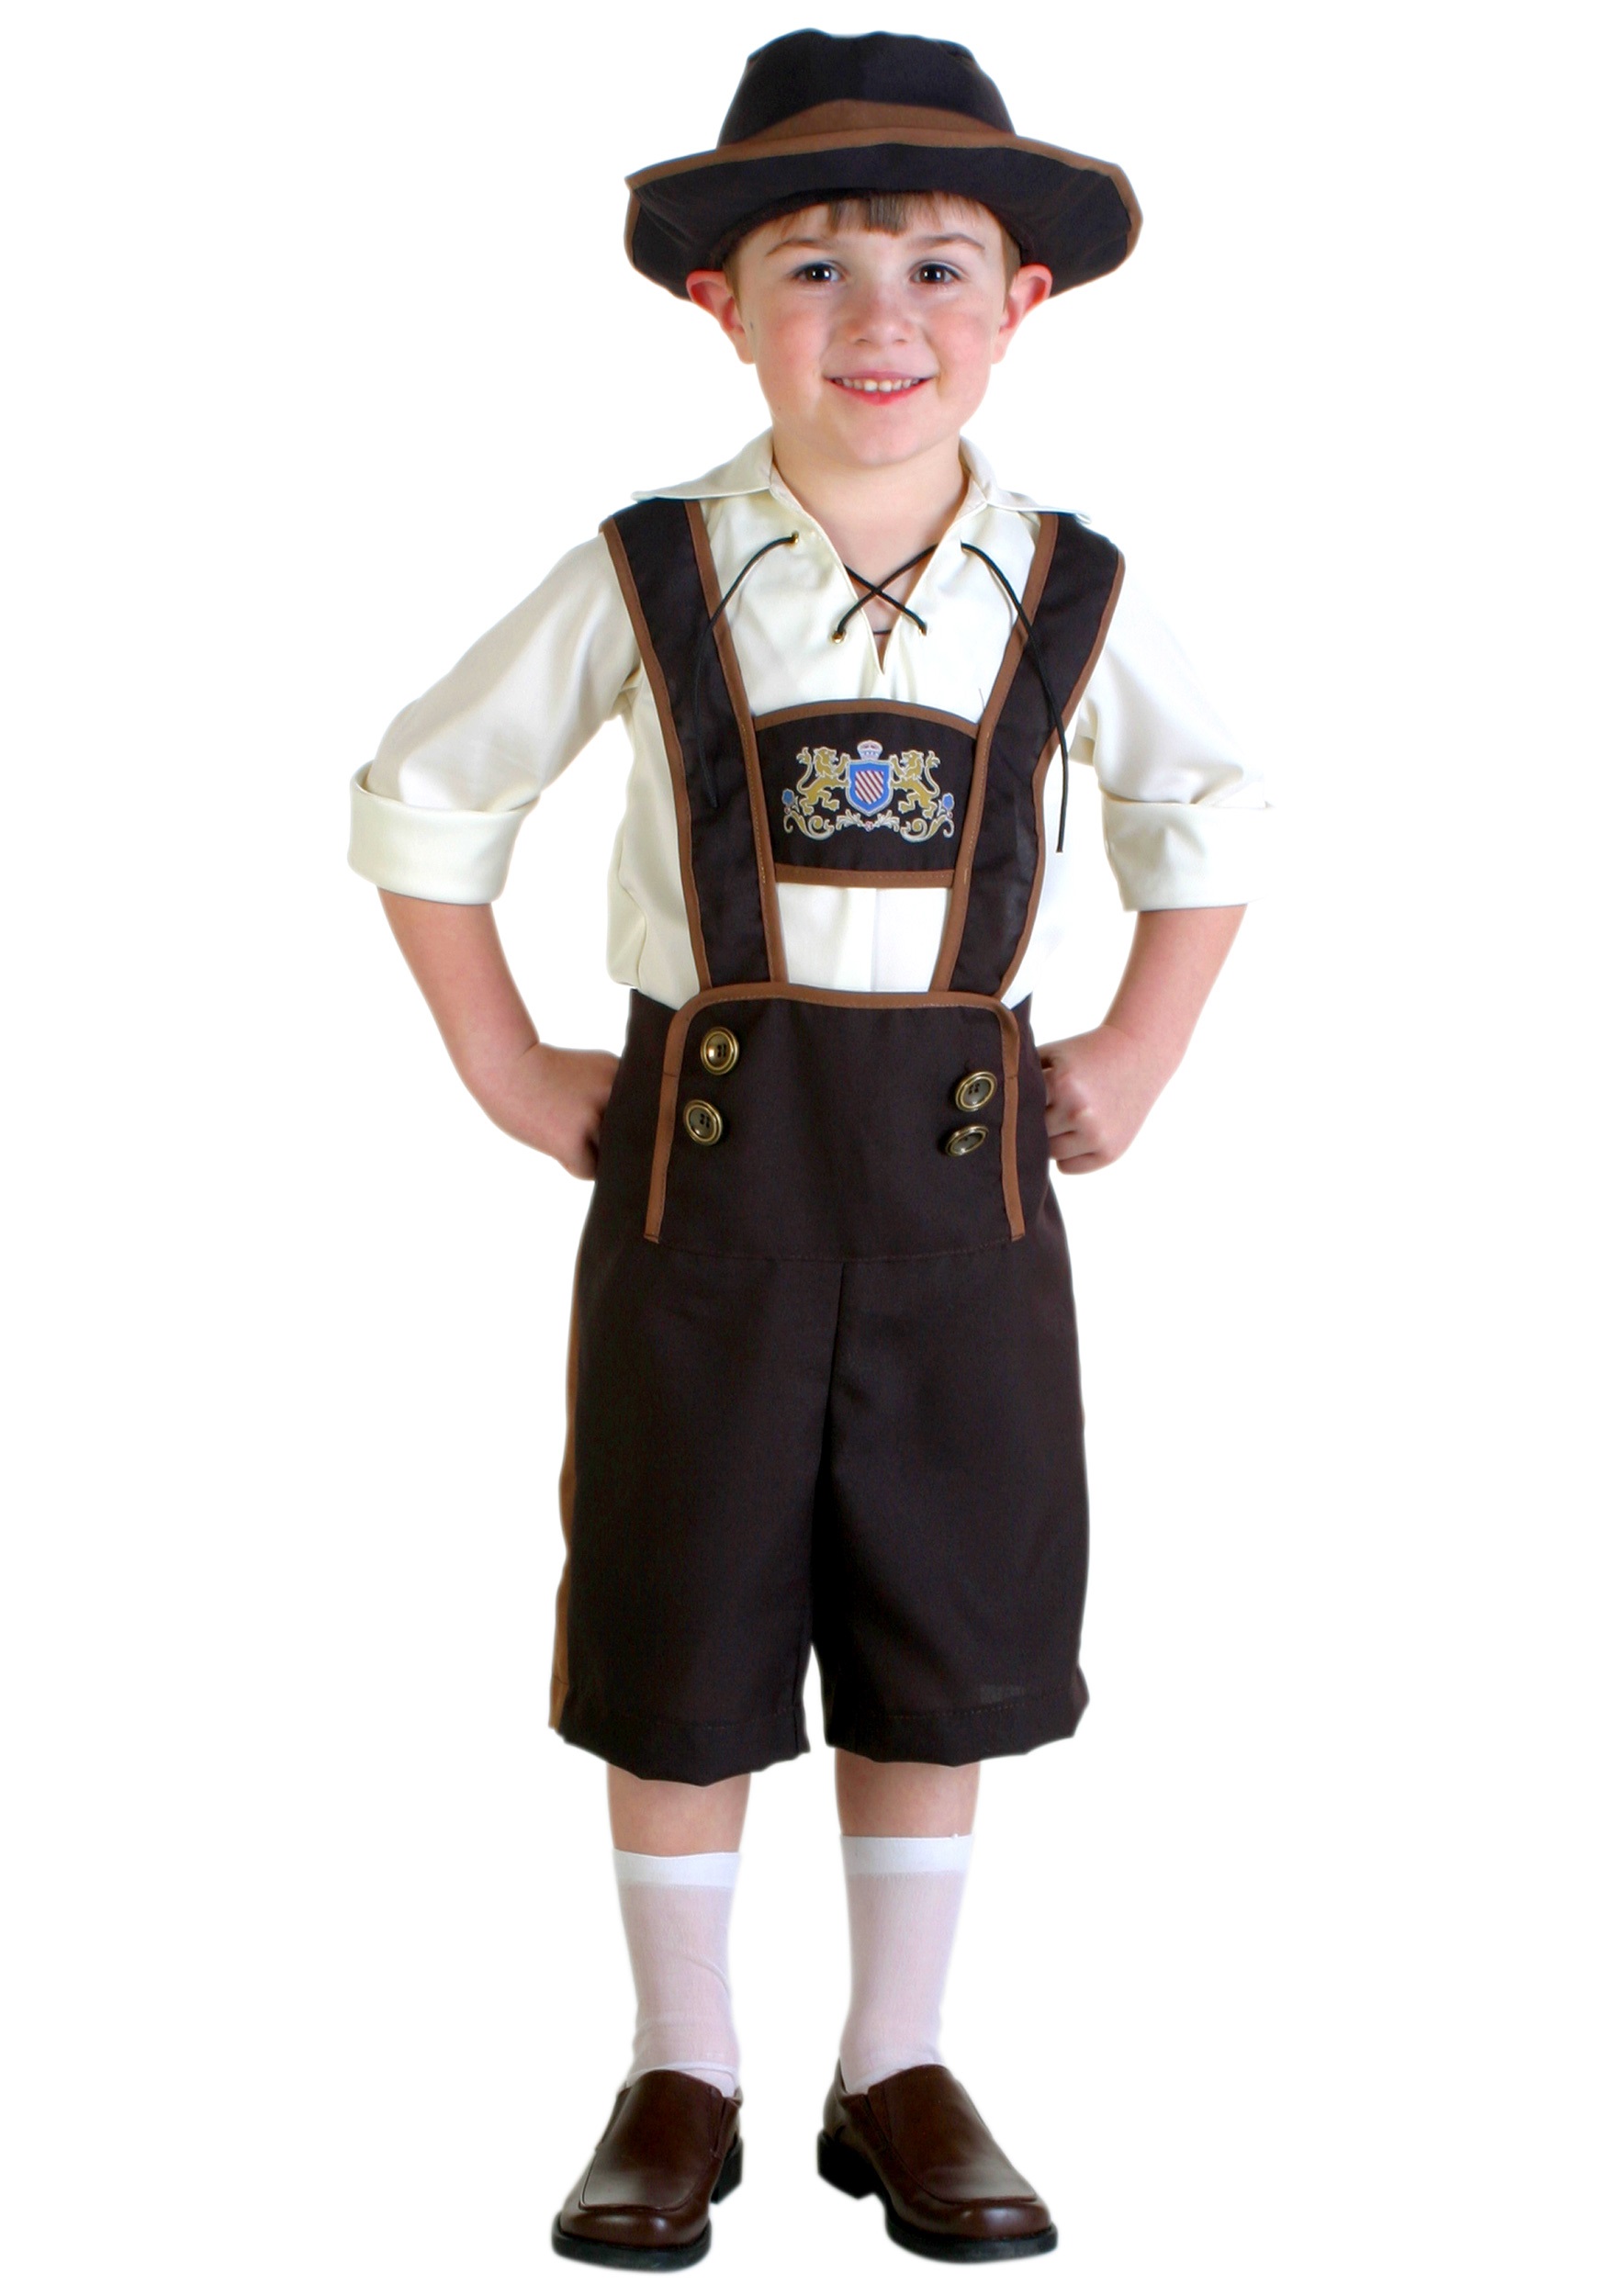 Image of Toddler Lederhosen Boy Costume | German Costumes for Kids ID FUN1073TD-18mo